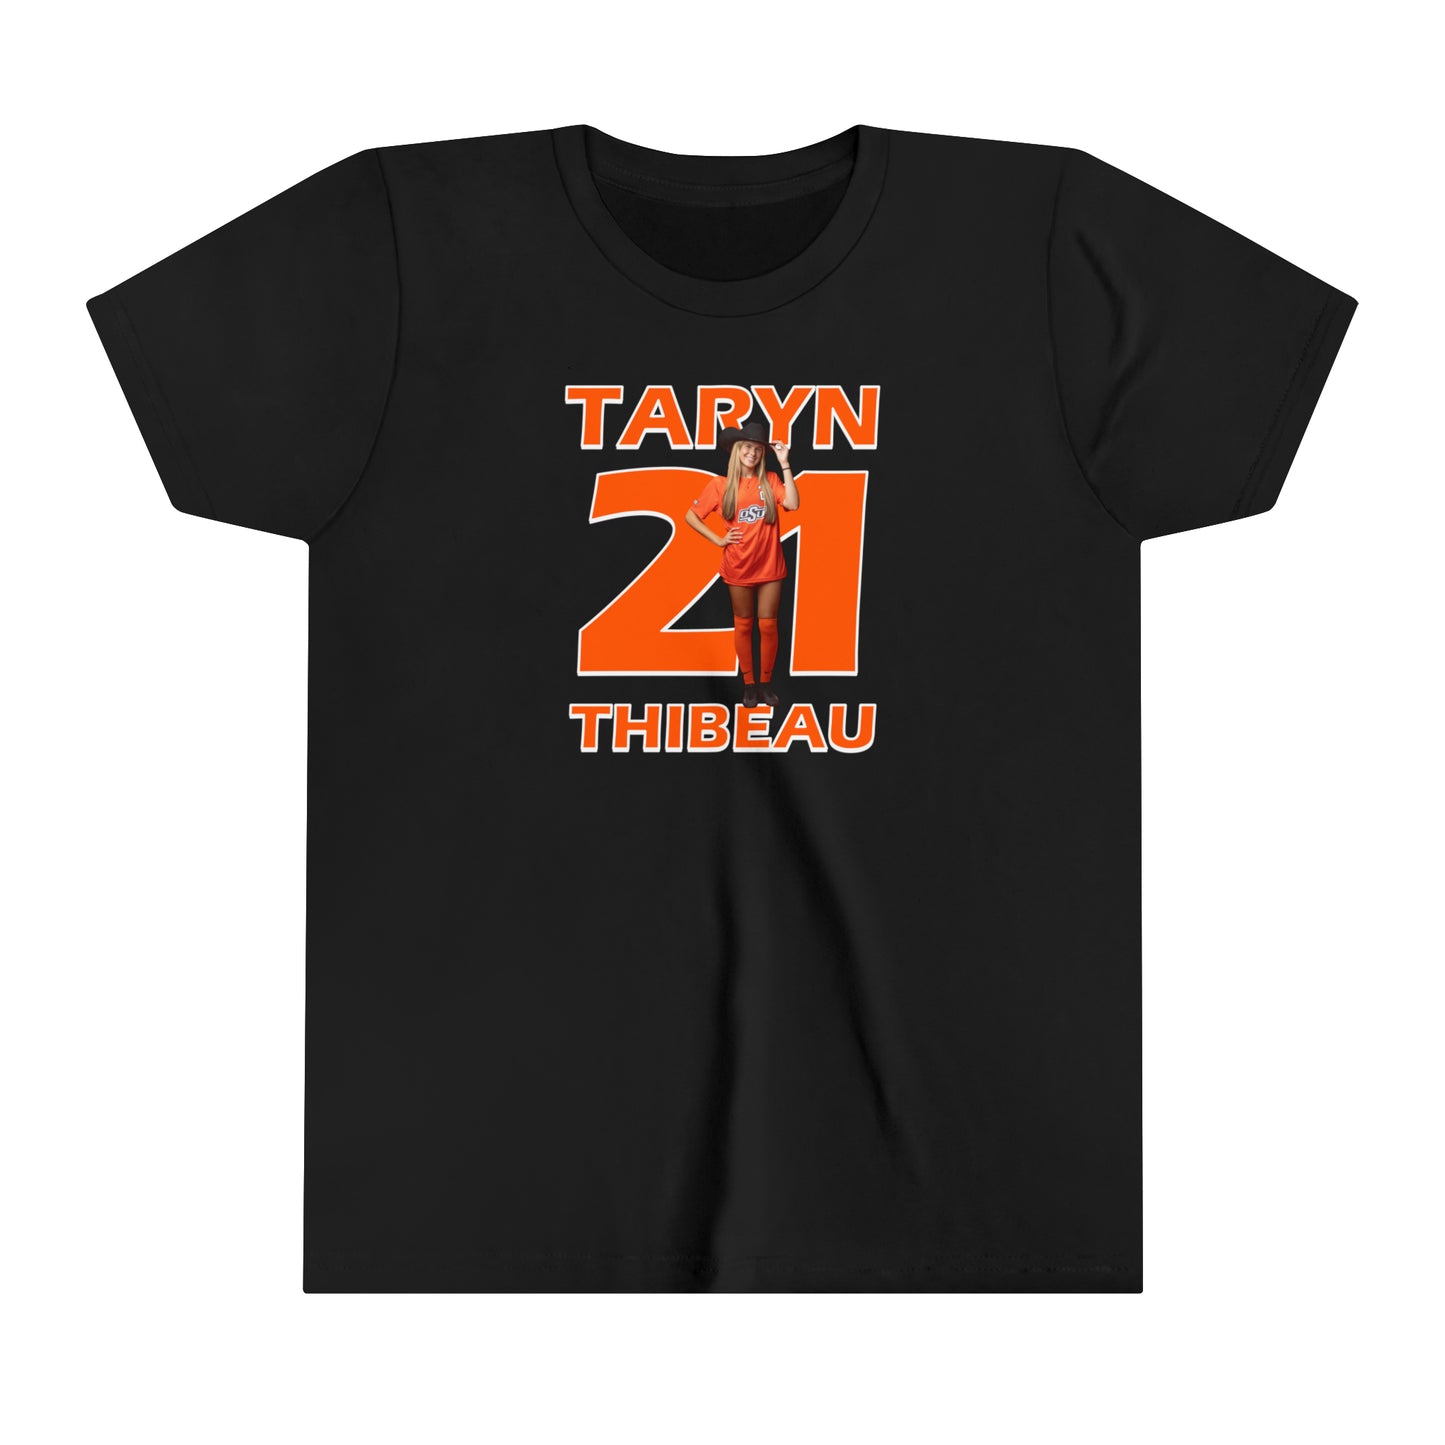 Taryn Thibeau Youth T-Shirt